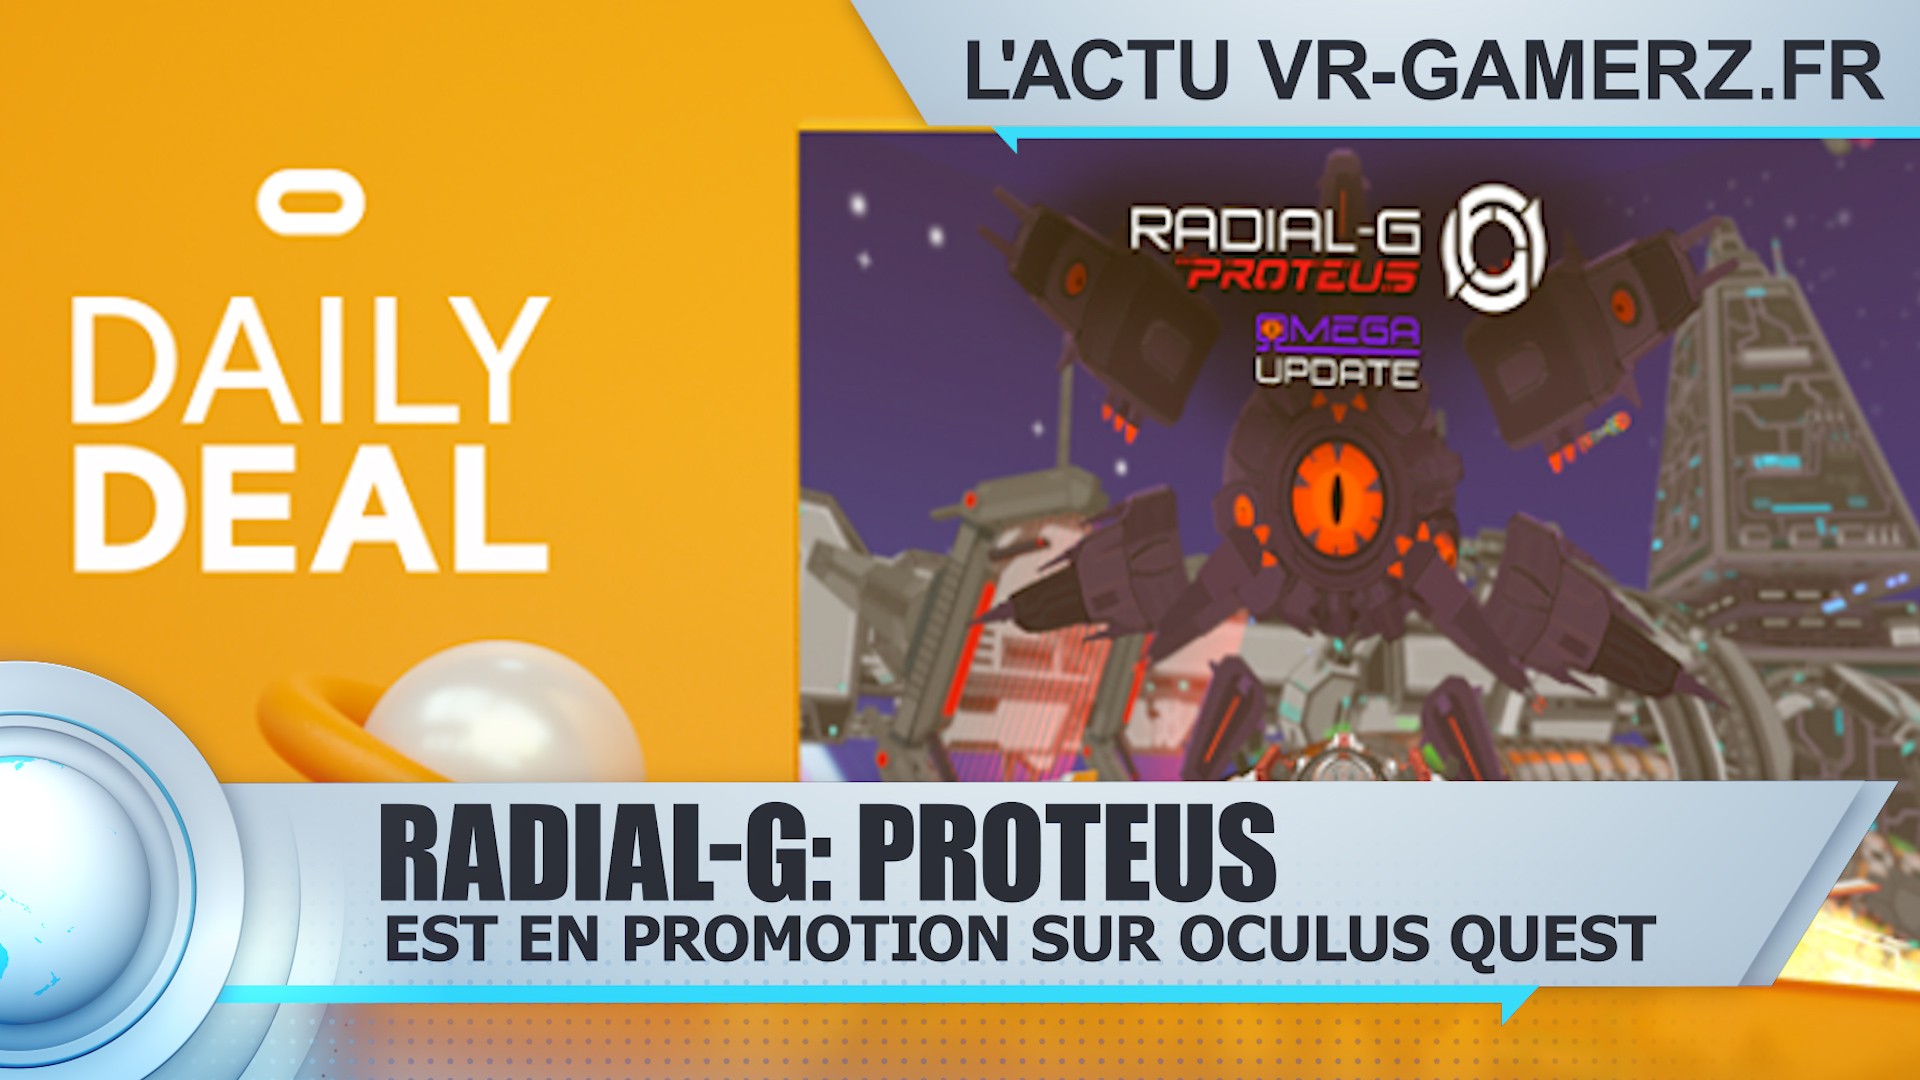 Radial-G: Proteus Oculus quest est en promotion